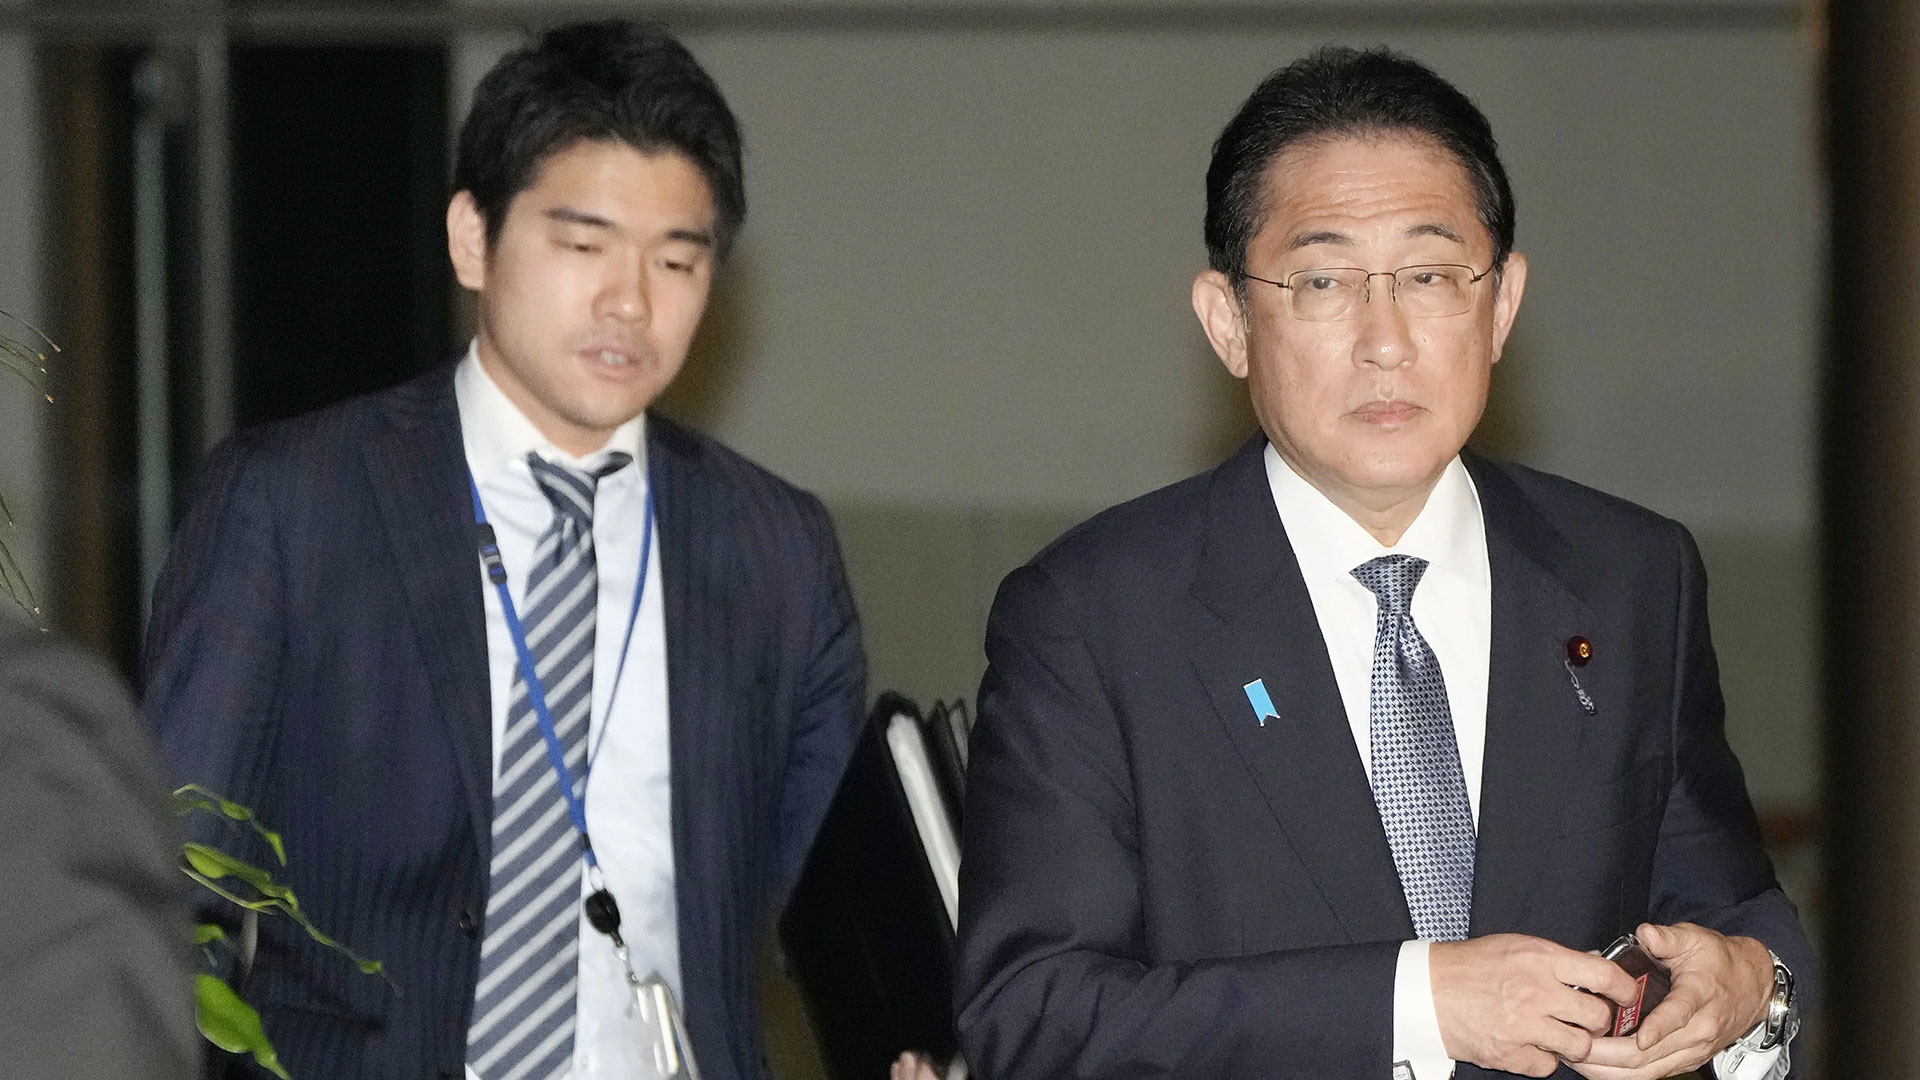 El primer ministro de Japón destituyó a su hijo tras una polémica fiesta 